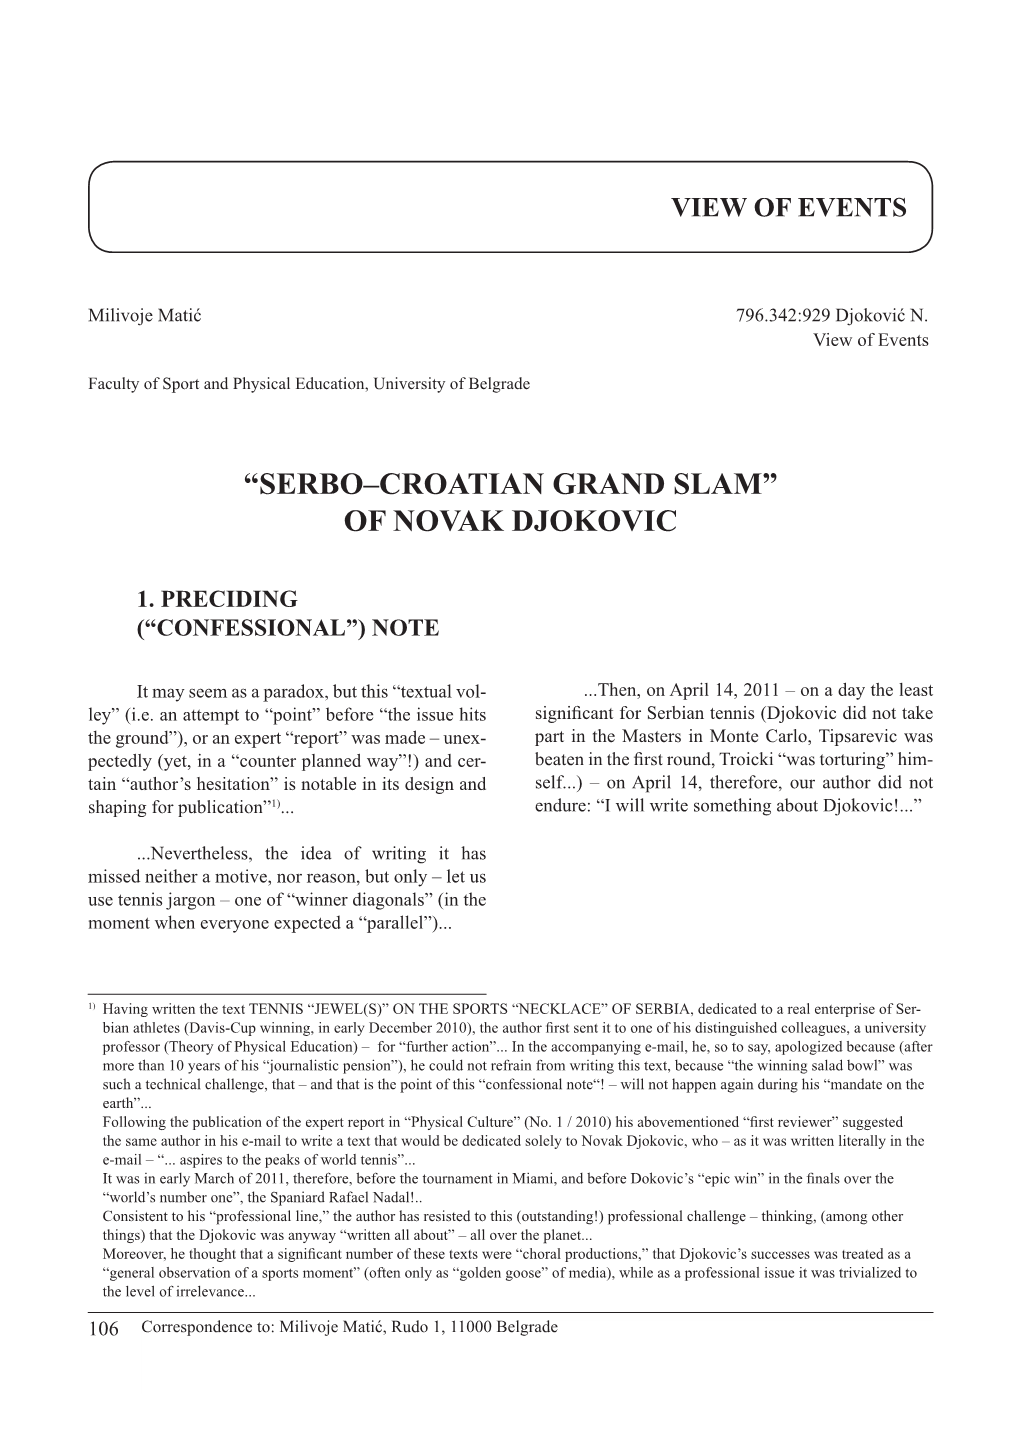 Of Novak Djokovic